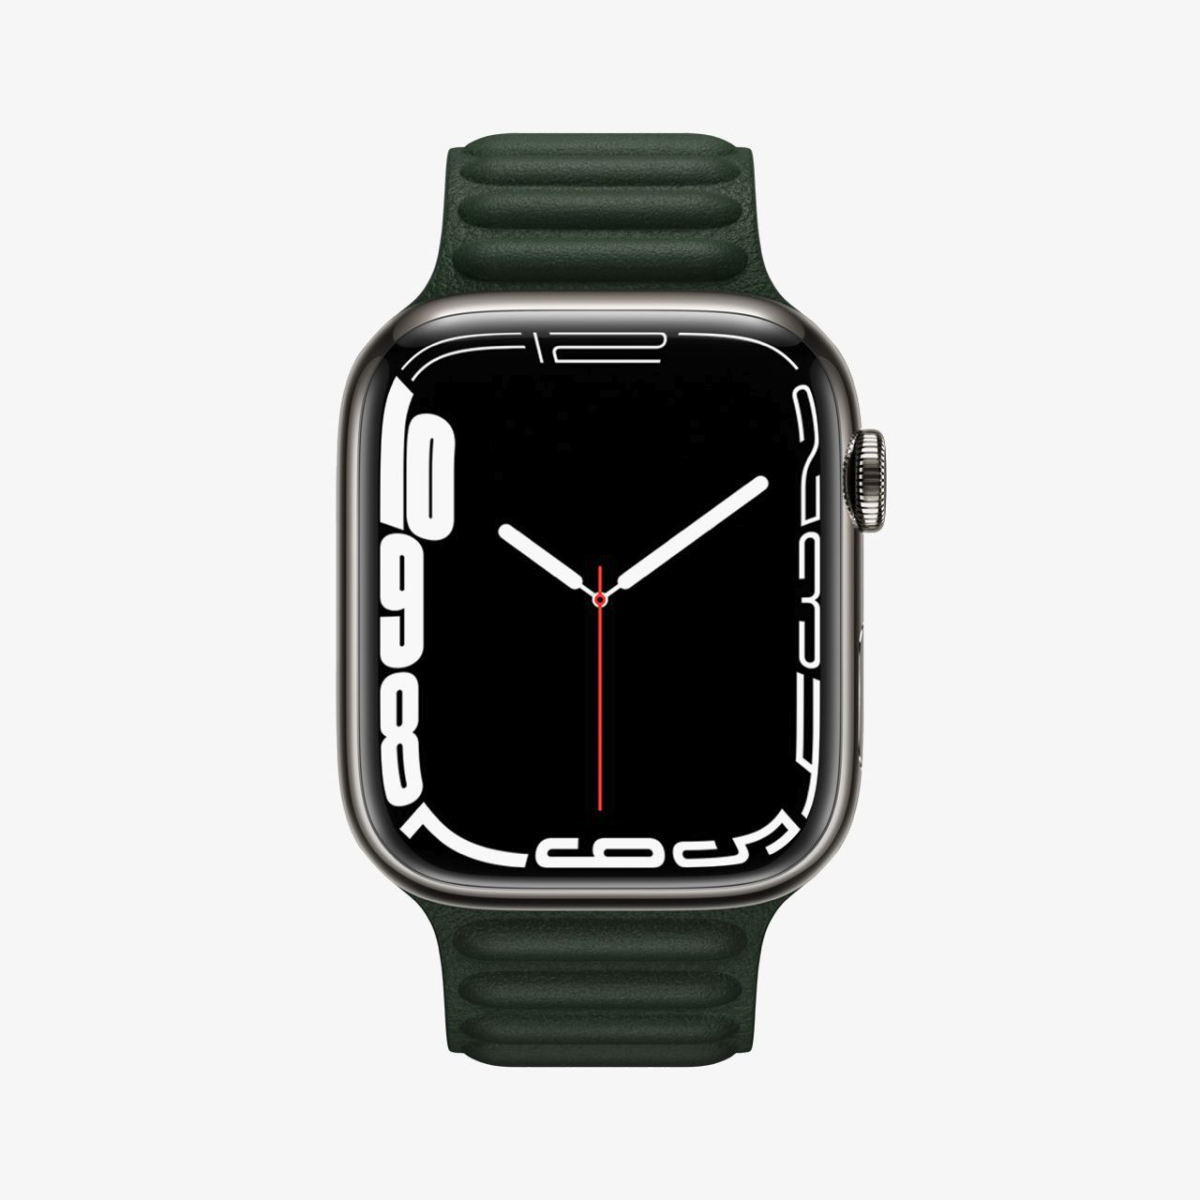 Apple Watch Series 7 нашли секретный модуль передачи данных, работающий на частоте 60,5 ГГц